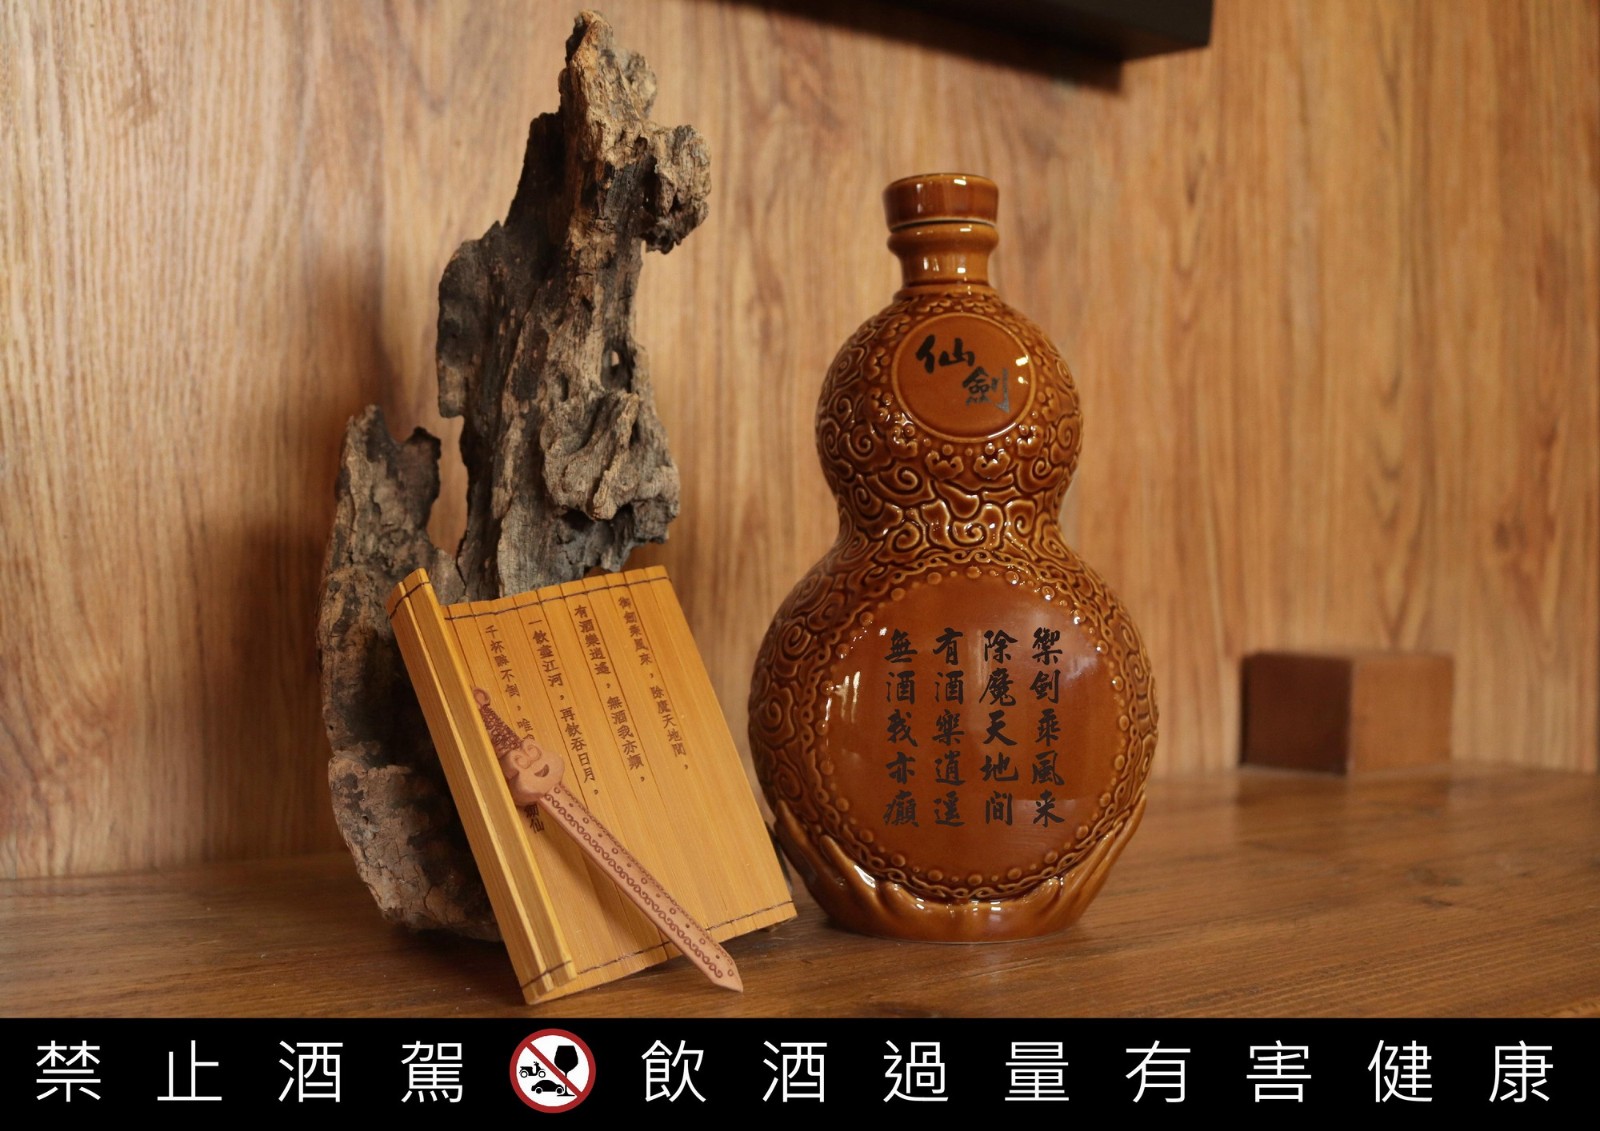 《仙劍》推出限量版葫蘆造型紀念酒 你值得擁有